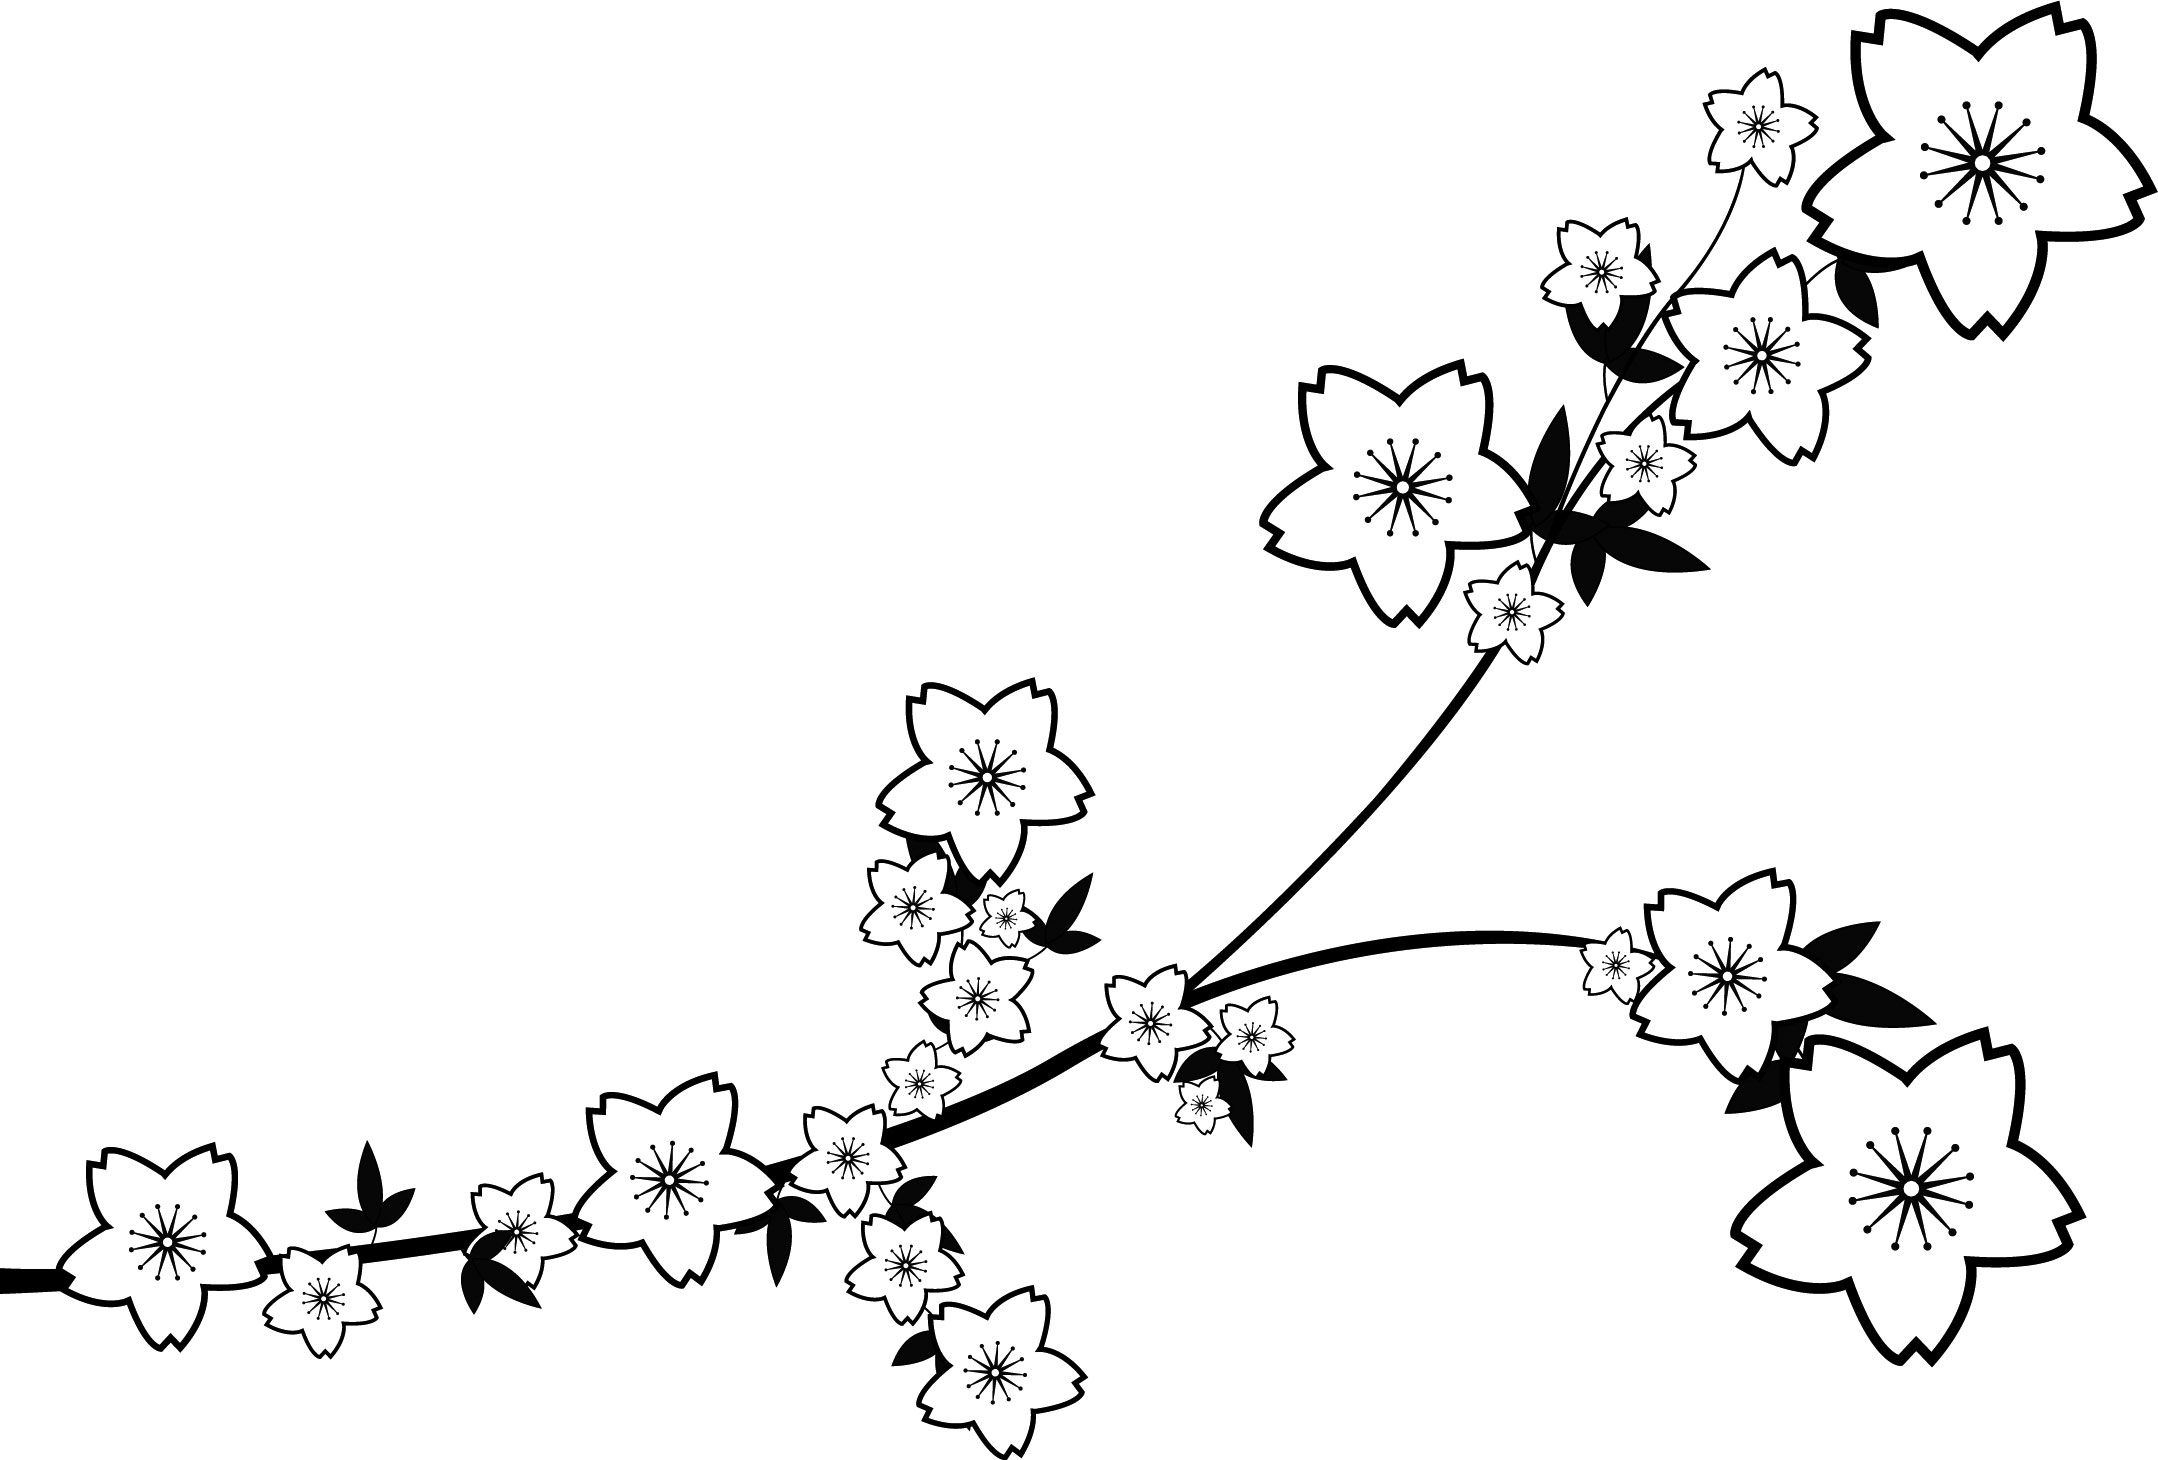 花のイラスト フリー素材 白黒 モノクロno 611 白黒 枝葉 曲線